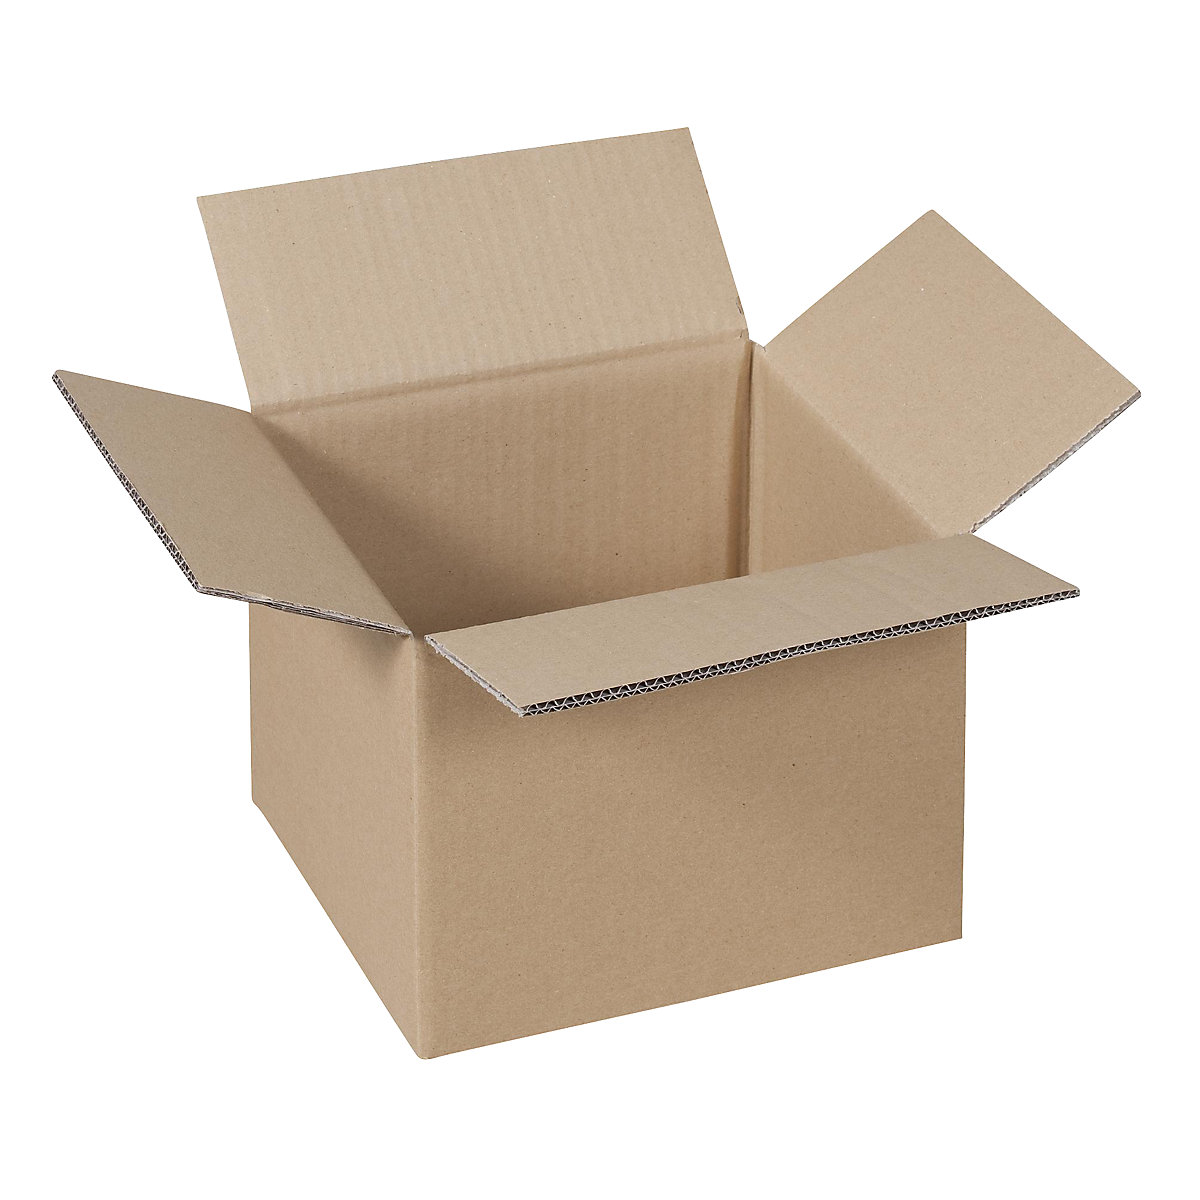 Folding cardboard box, FEFCO 0201